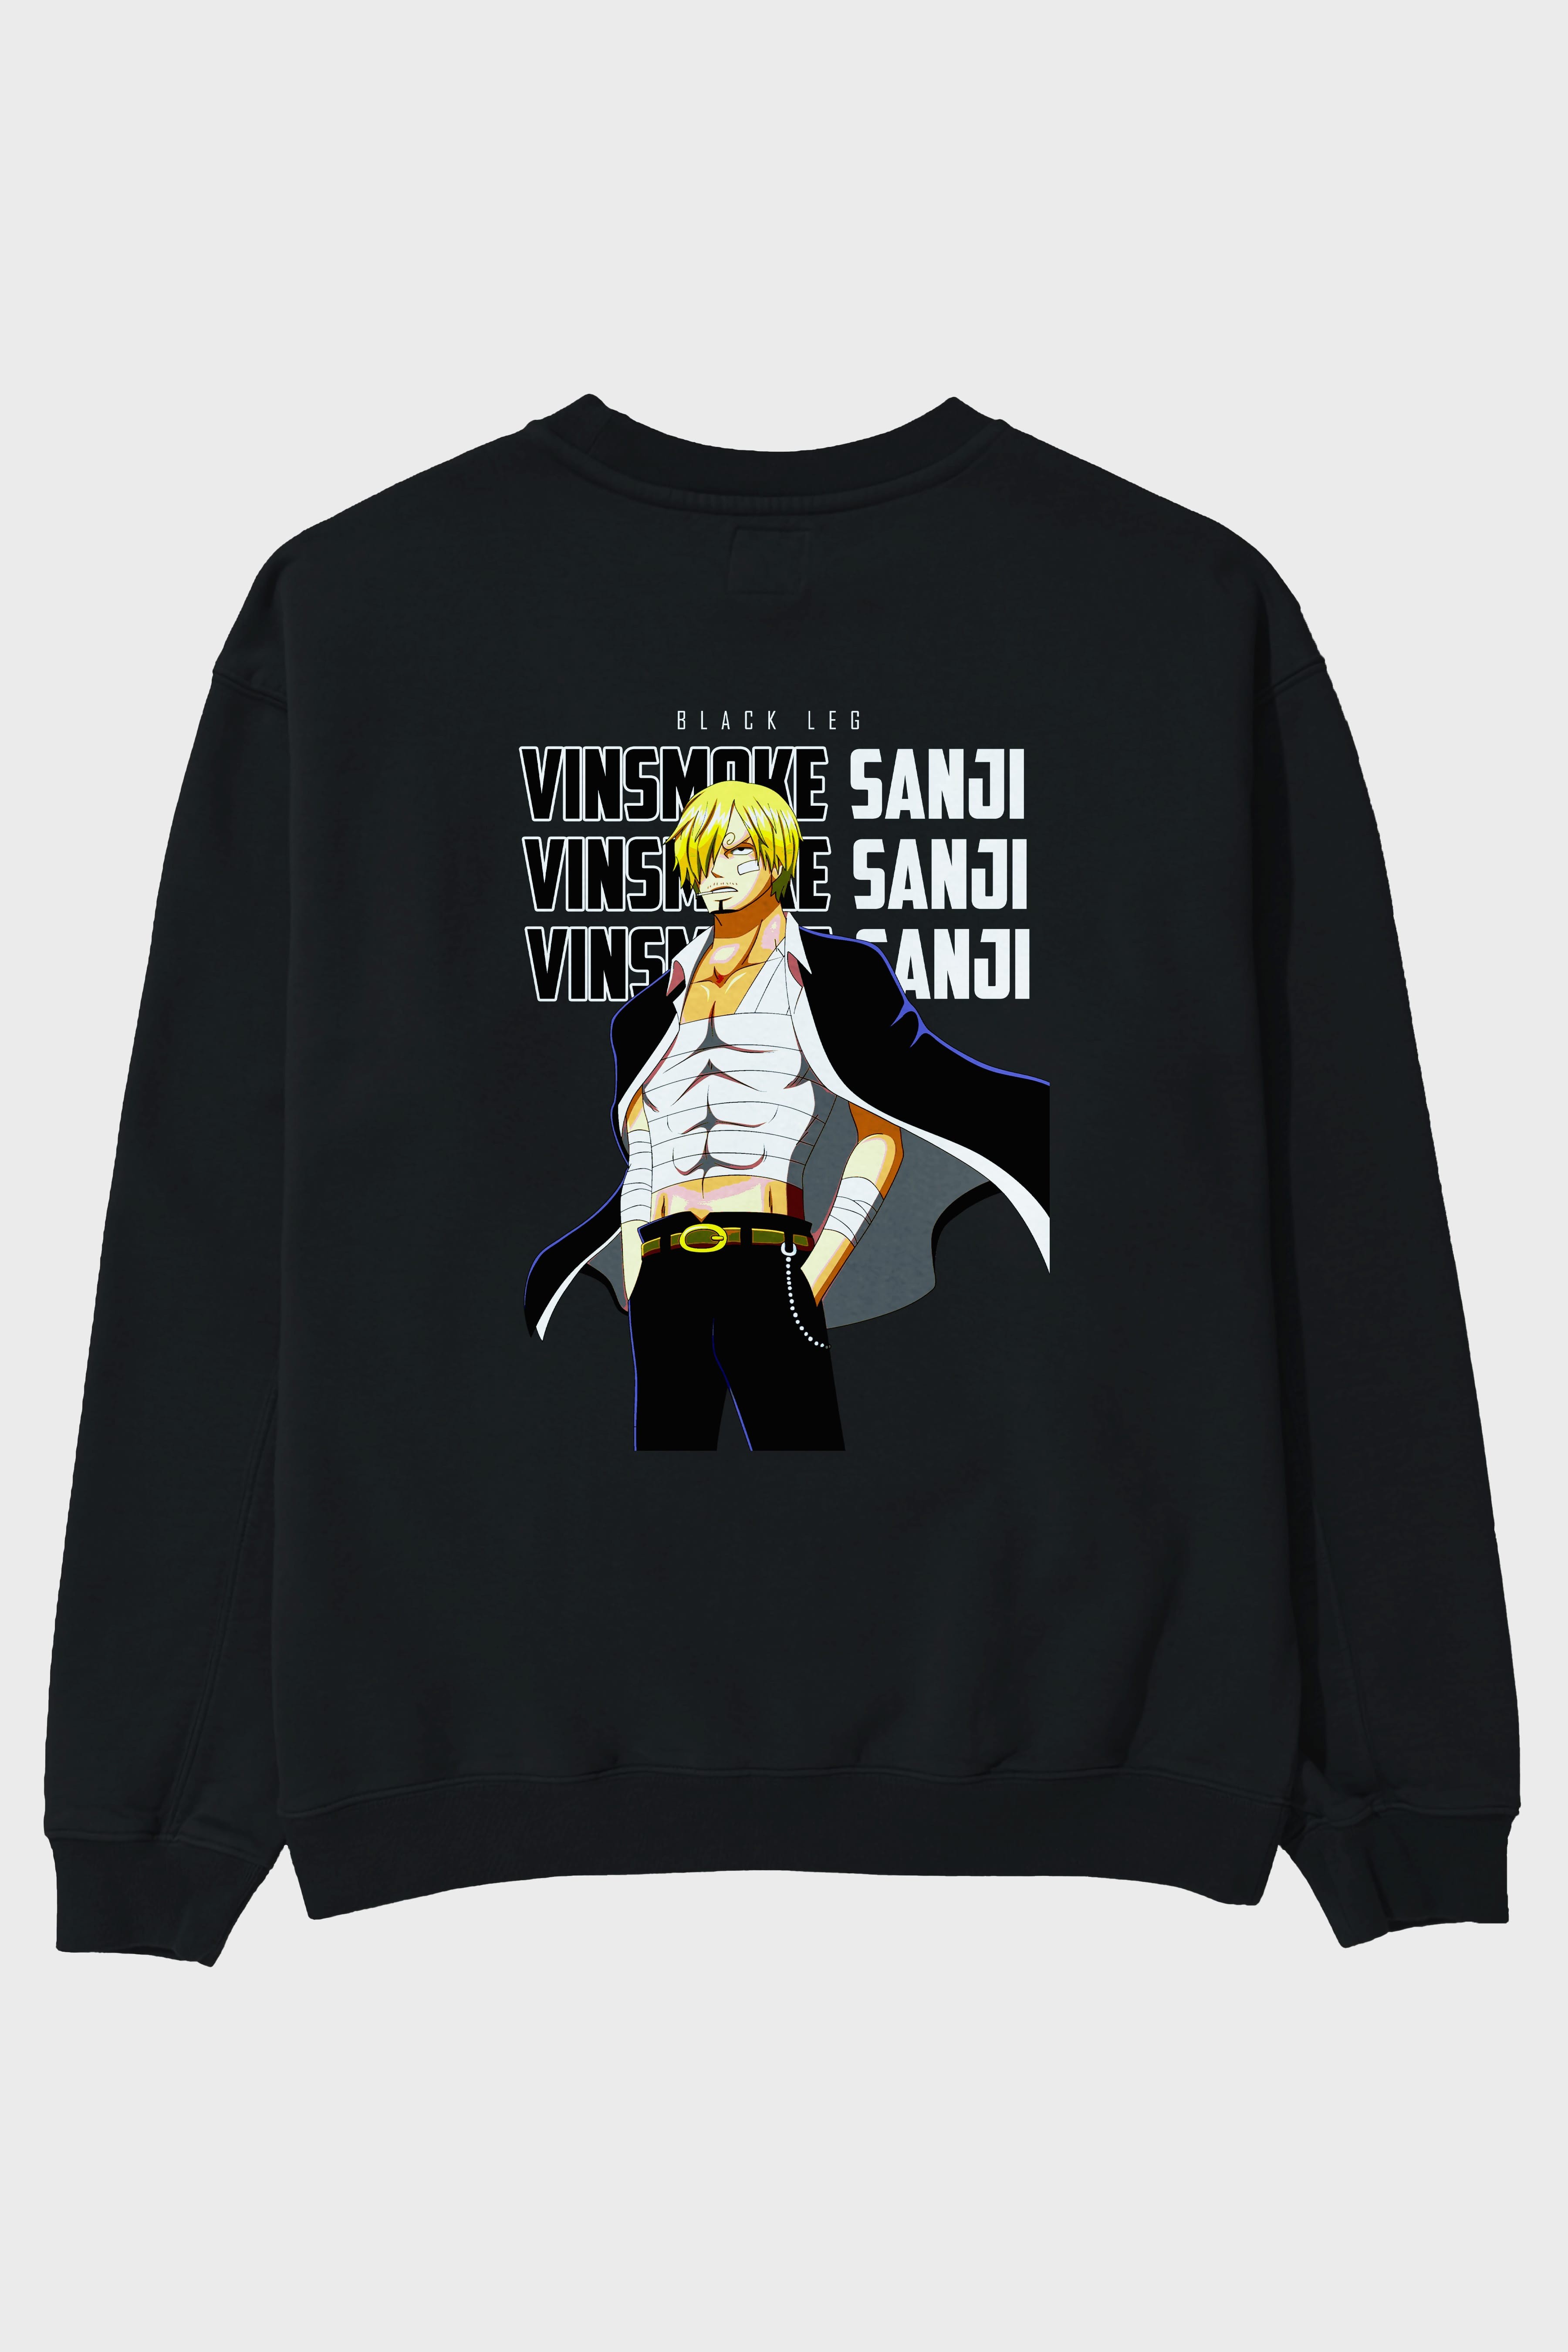 Sanji Arka Baskılı Anime Oversize Sweatshirt Erkek Kadın Unisex